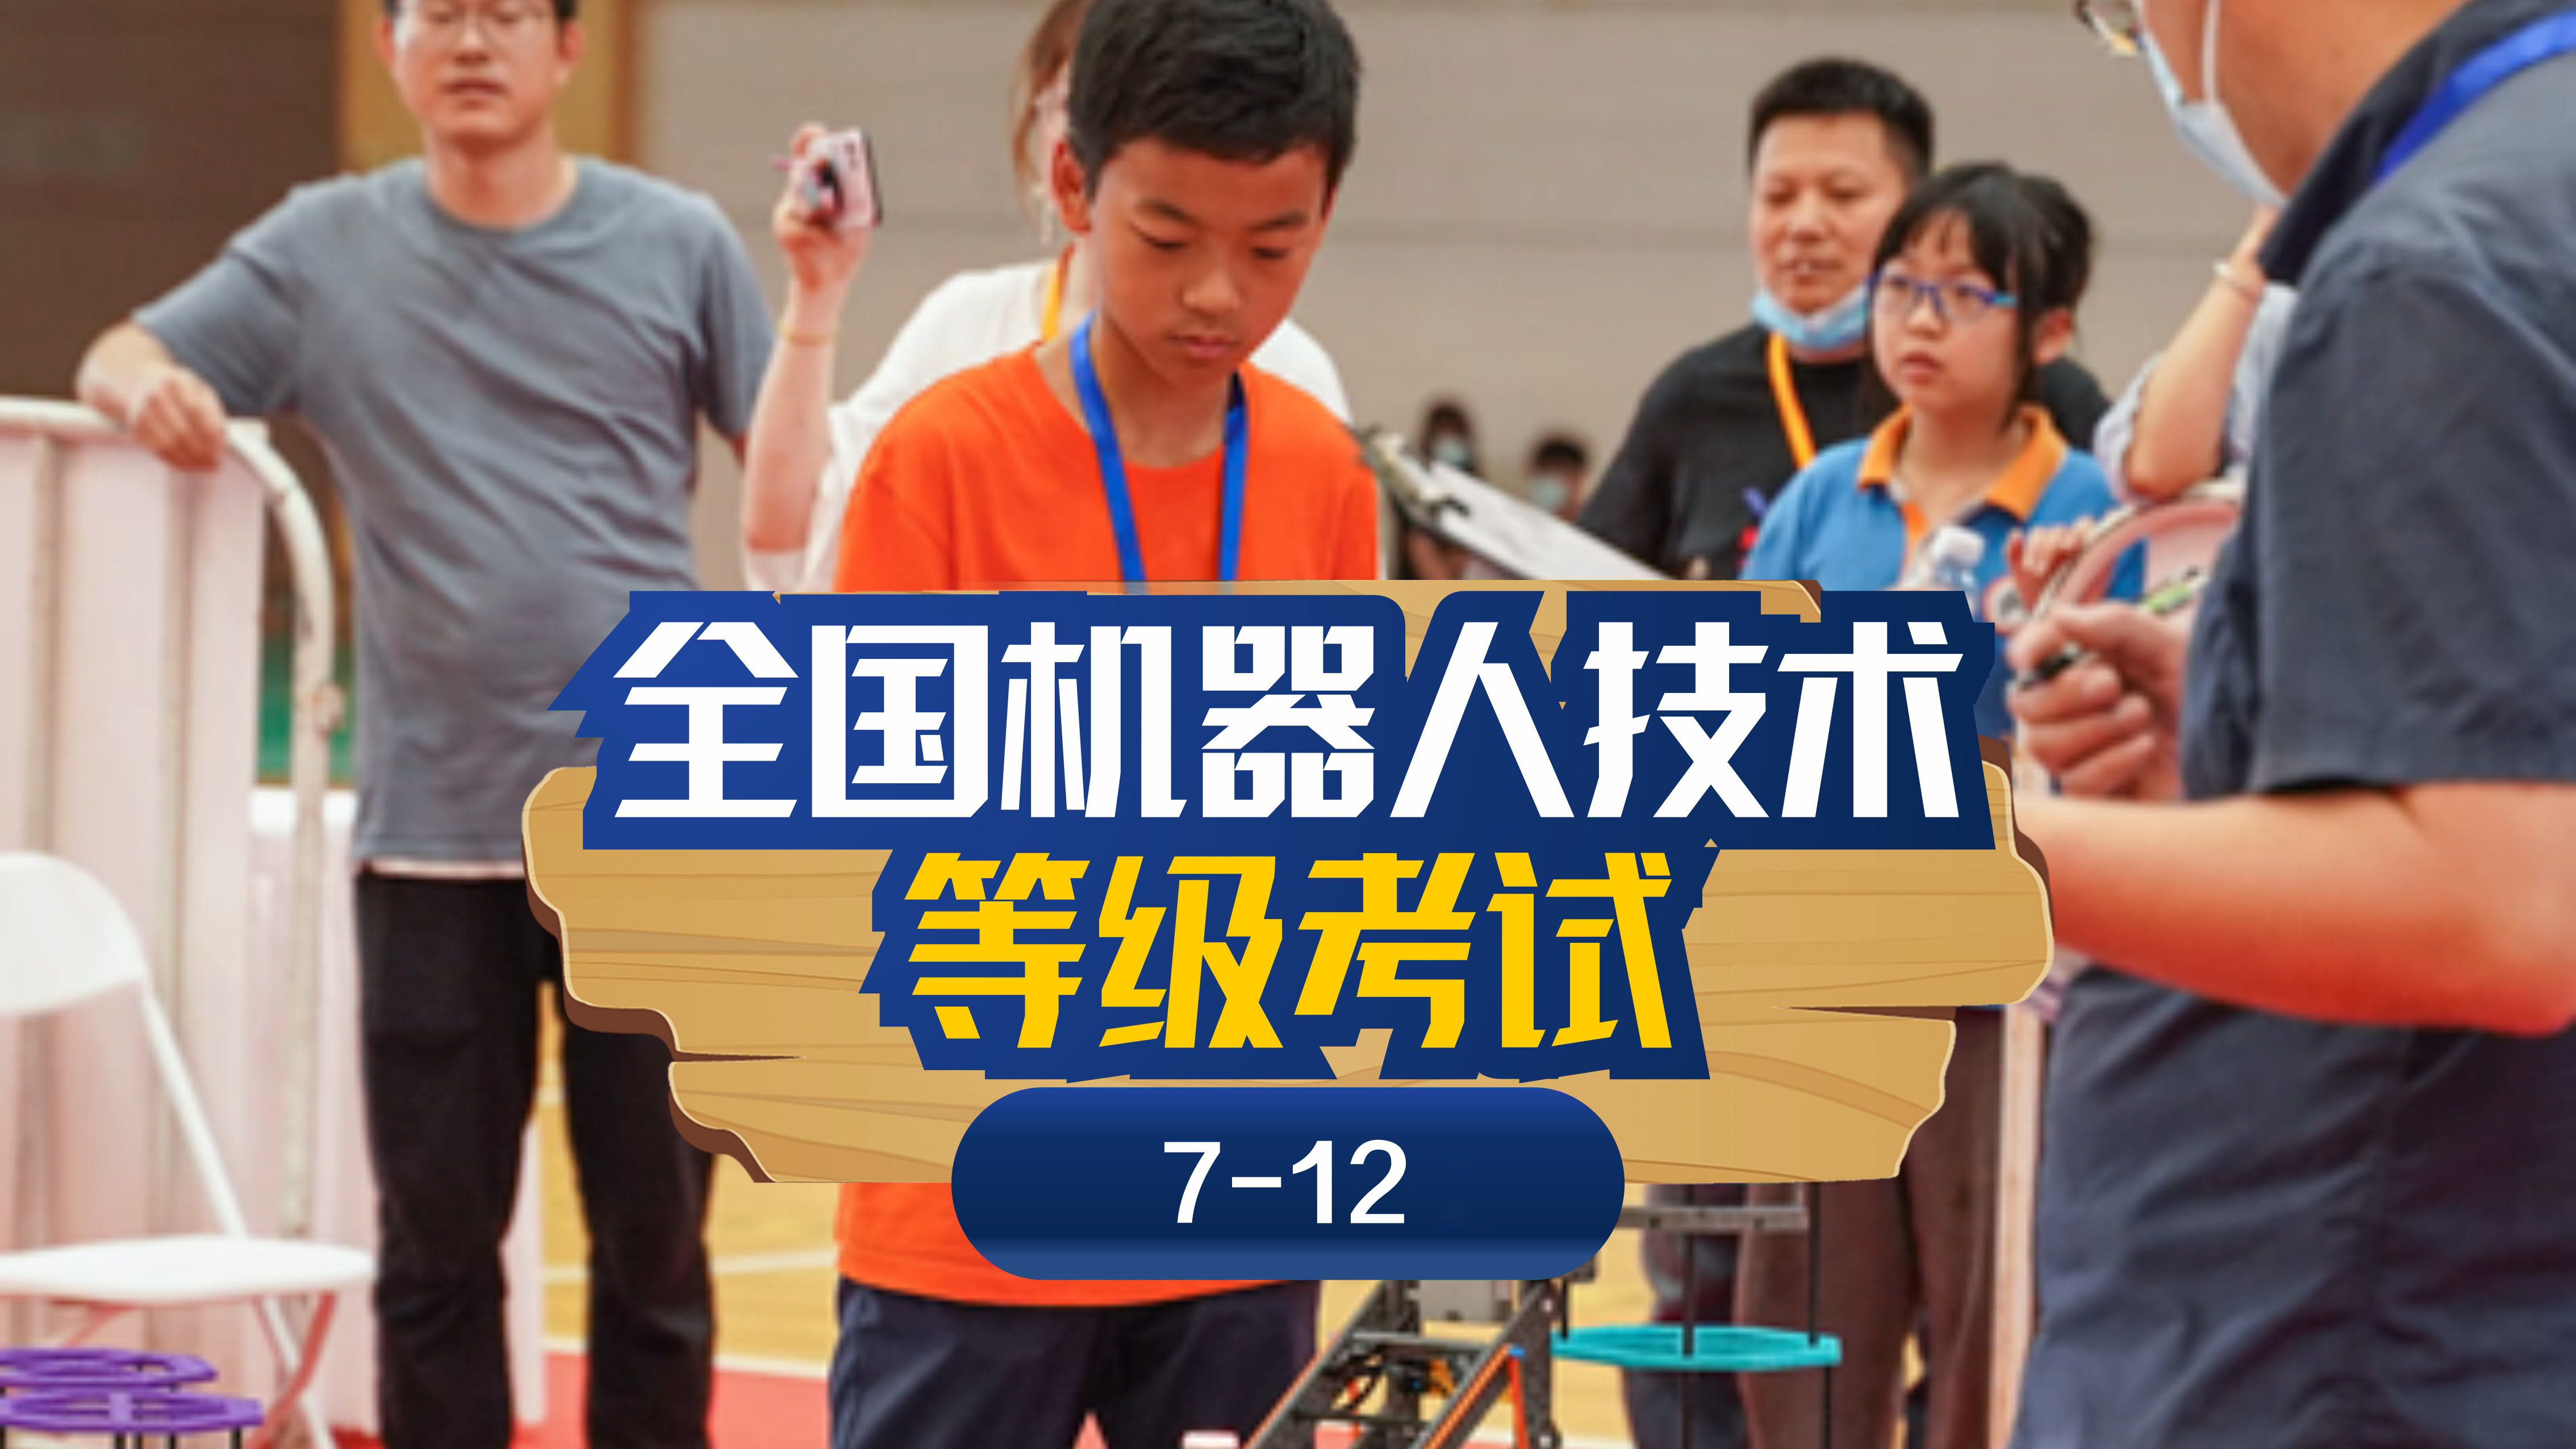 上海斯坦星球科创编程[7-12岁]全国机器人技术等级考试图片